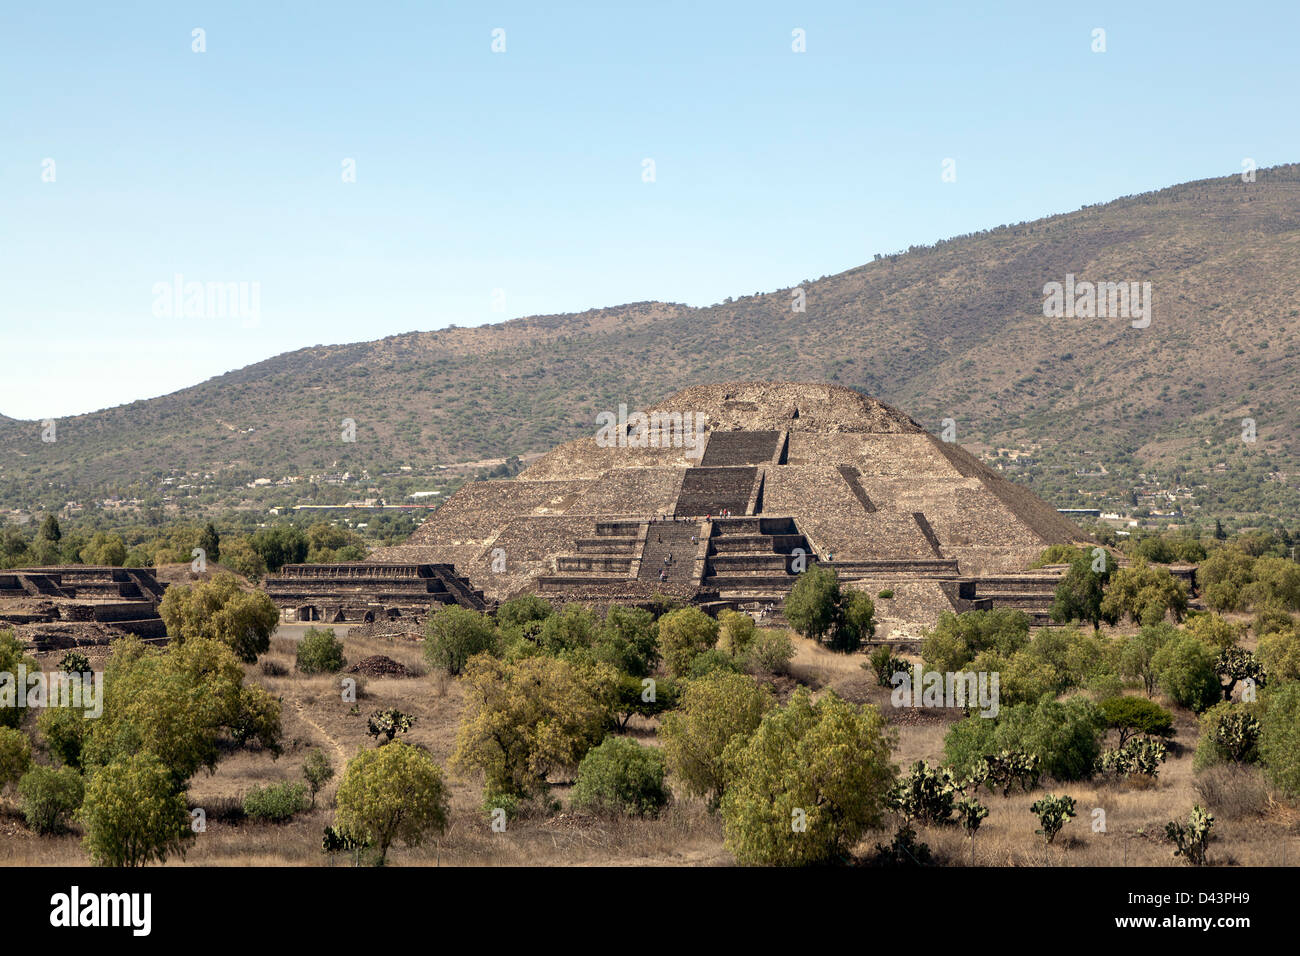 Per i turisti che visitano le Piramidi di Teotihuacan in Messico. Queste sono parte del sito archeologico nel bacino del Messico. Foto Stock